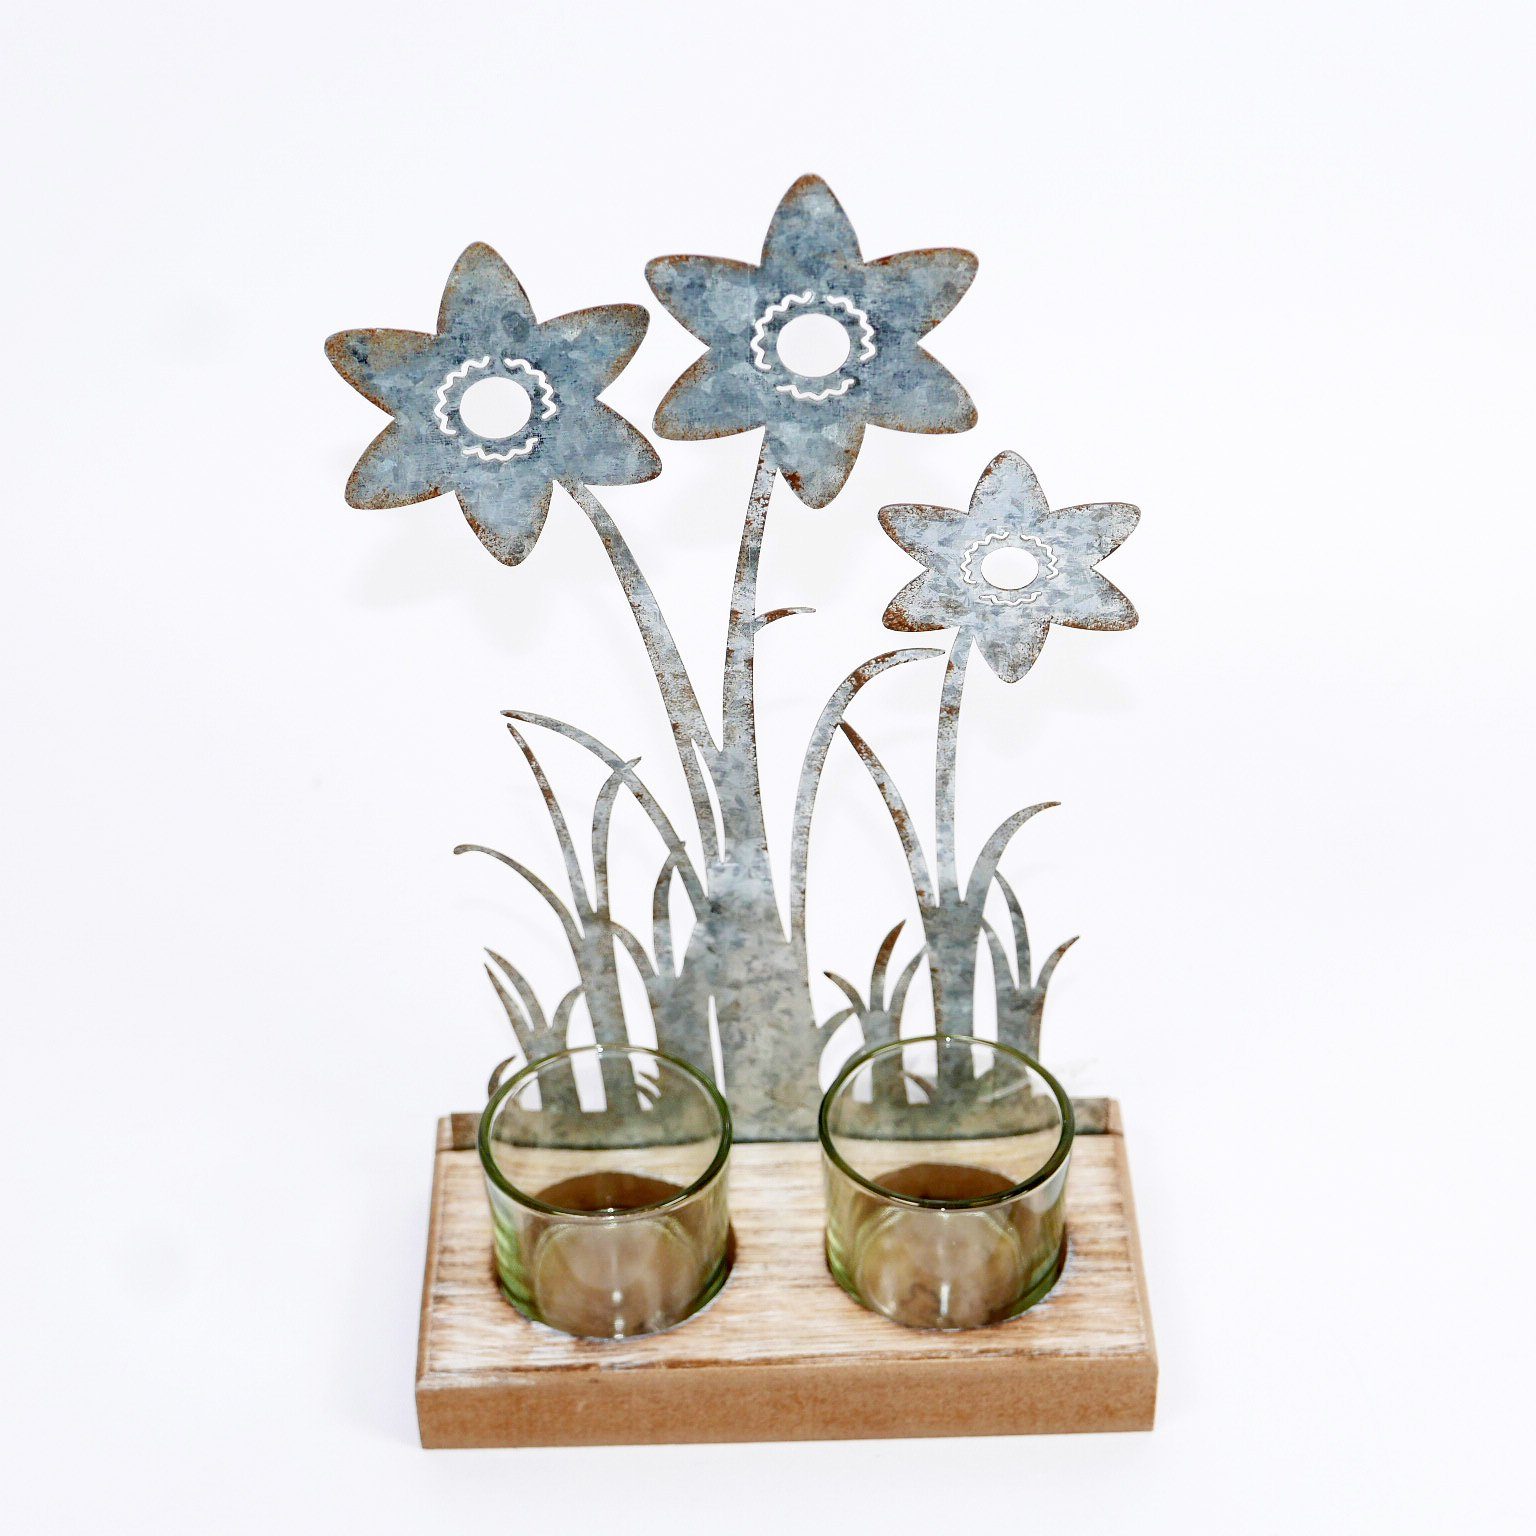 B&S Teelichthalter Teelichtglas 2er auf Holzsockel - Blumenverzierung aus Metall H 23 cm